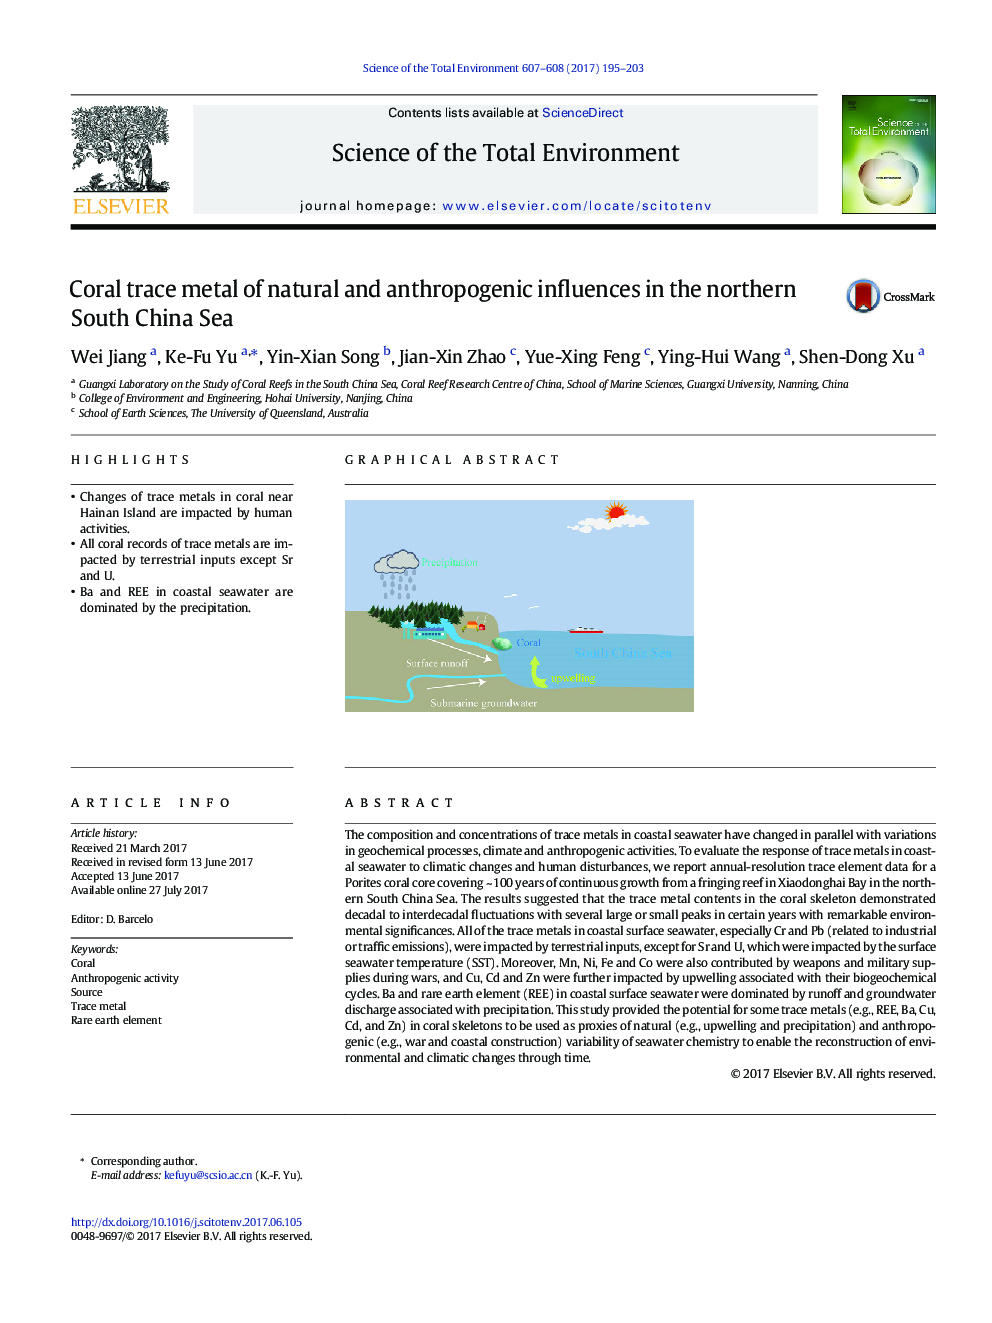 مرجان های فلزی از تاثیرات طبیعی و انسانی در شمال دریای چین جنوبی 